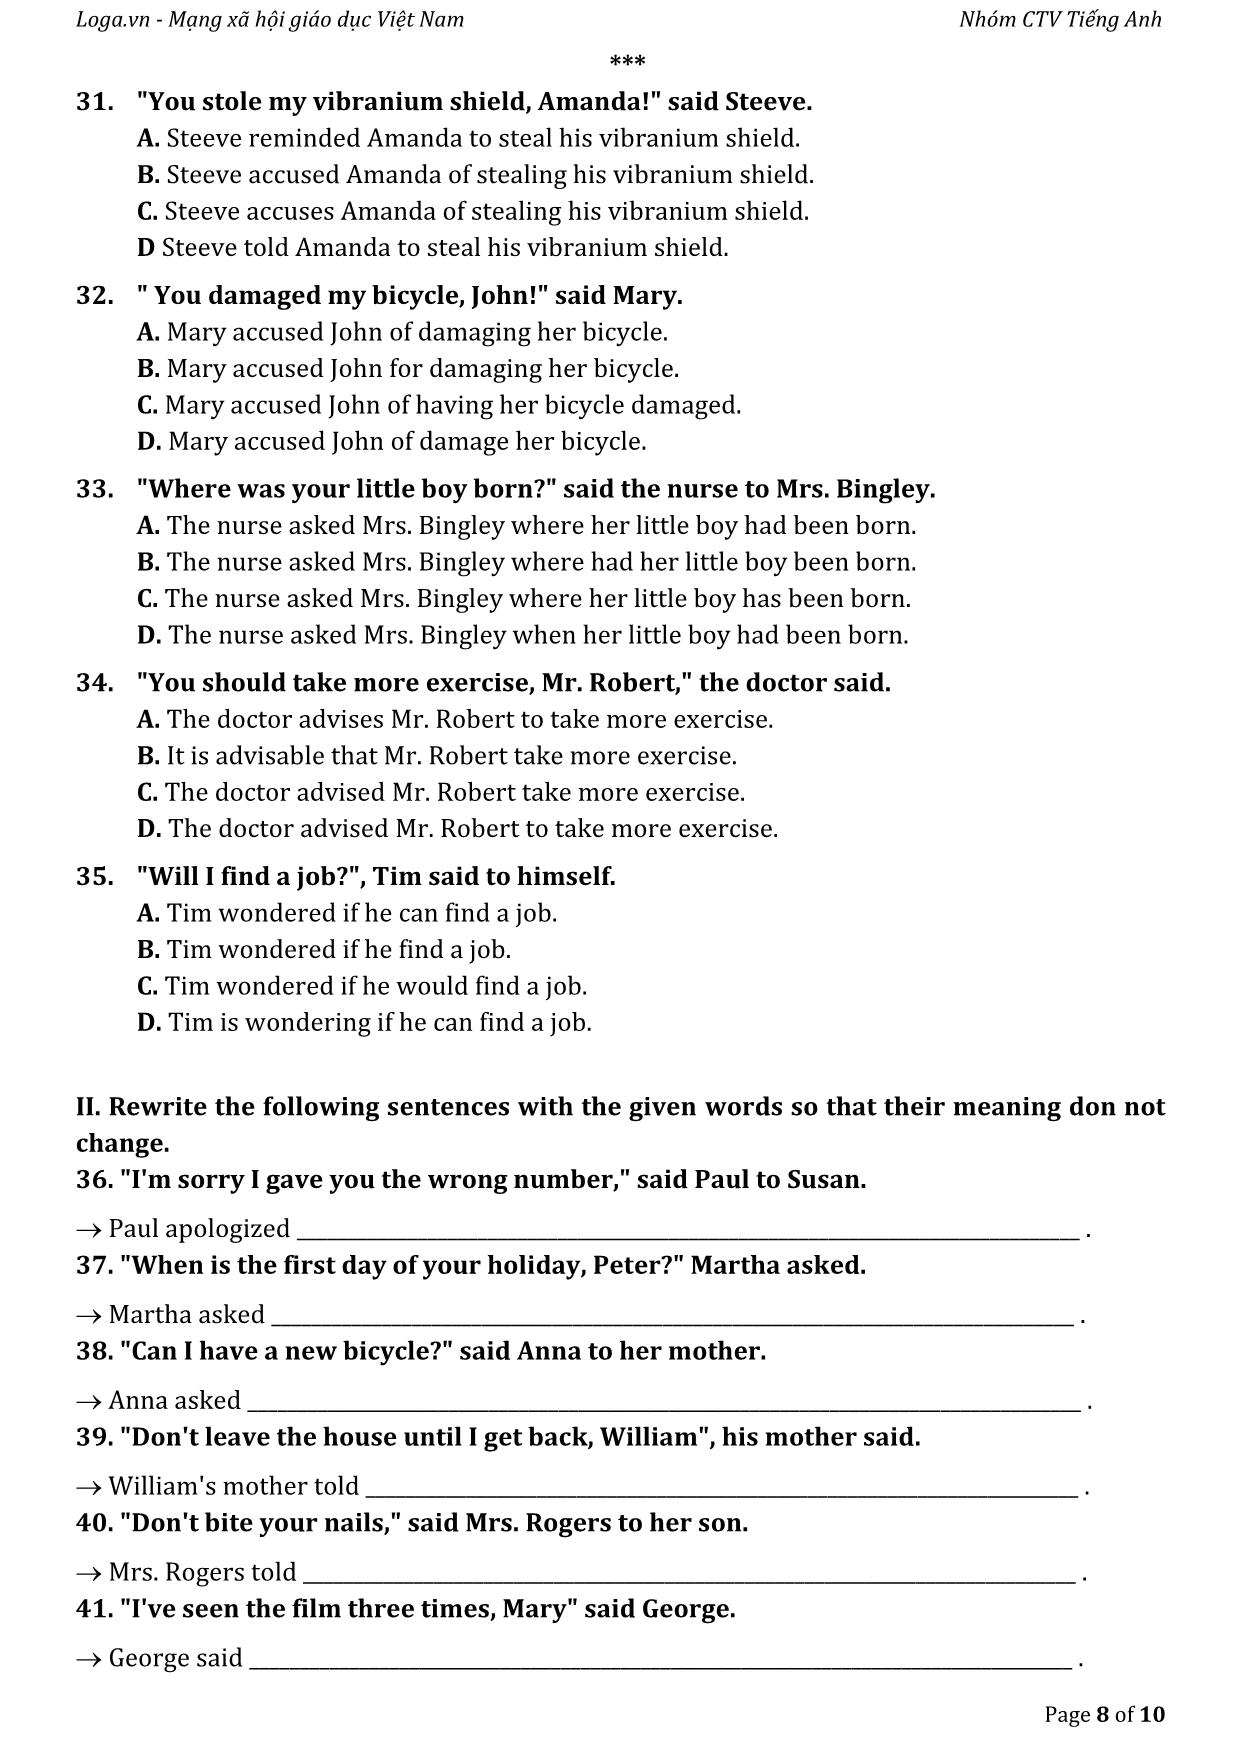 Bài tập tự luyện câu gián tiếp trong tiếng Anh trang 8